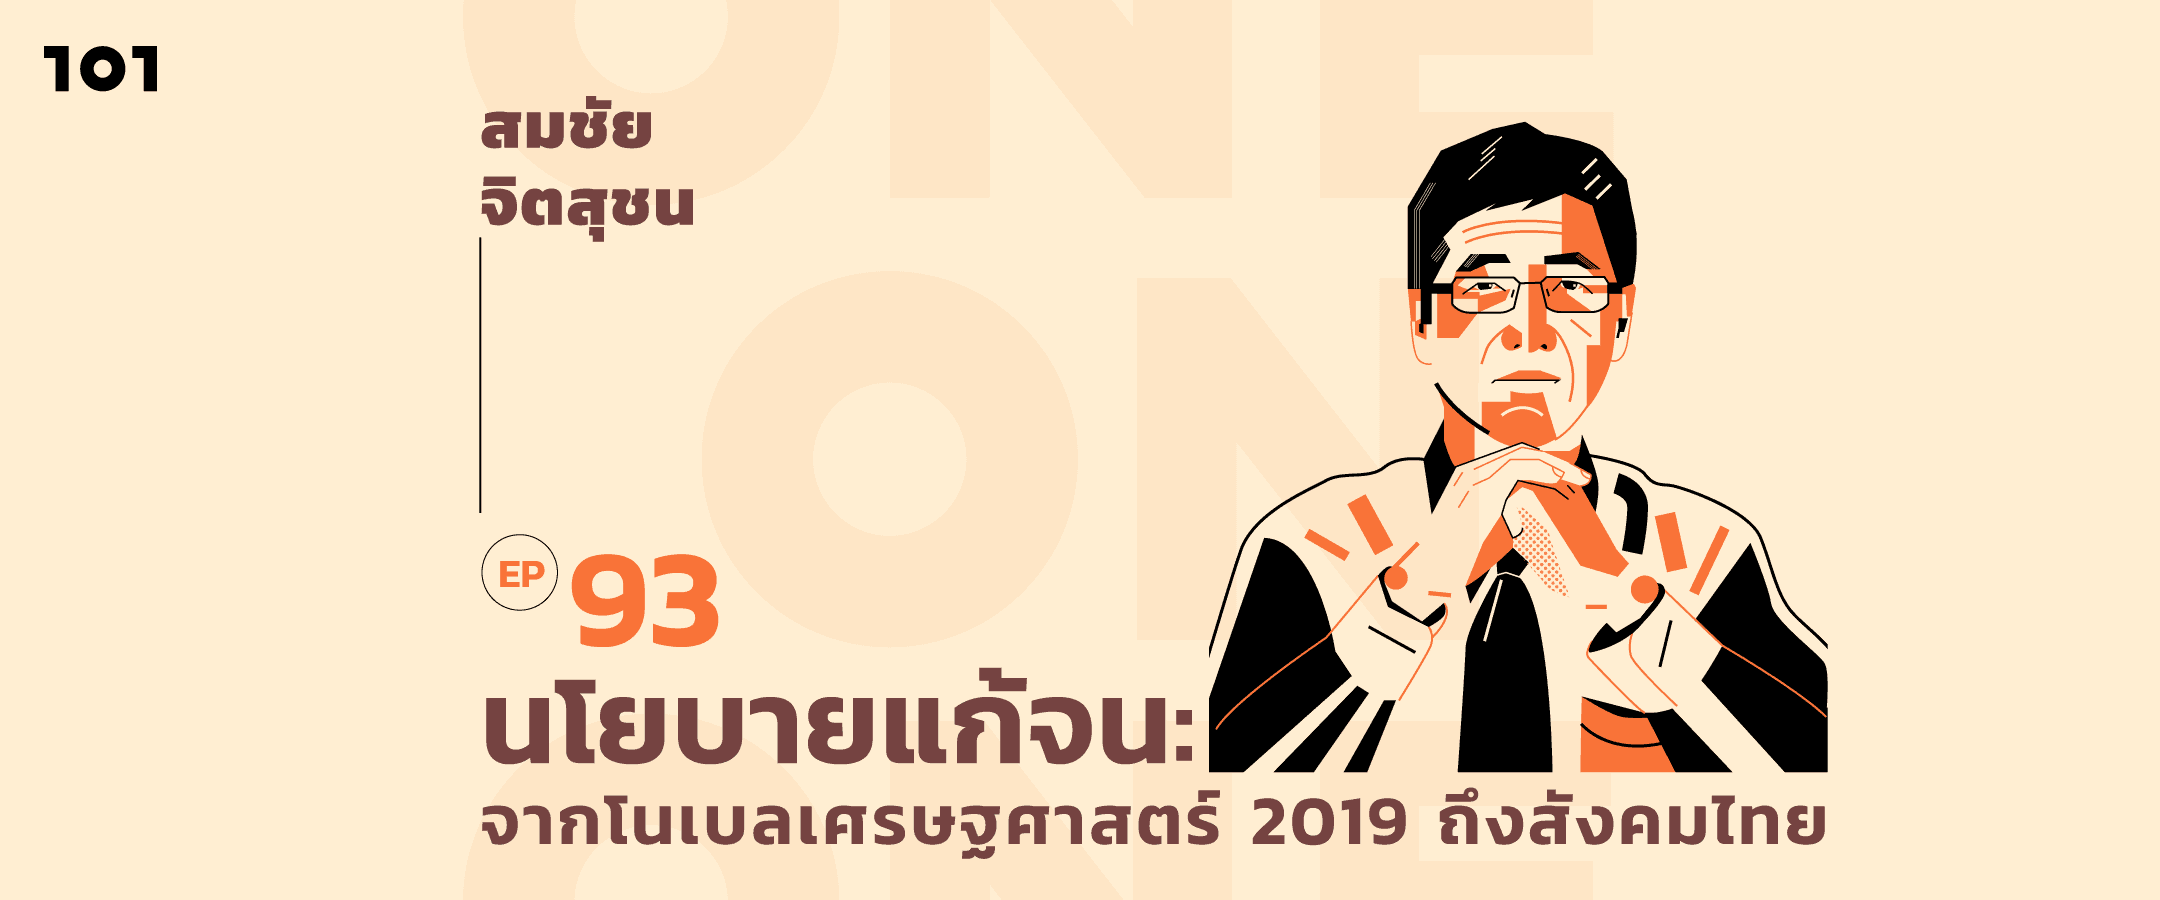 101 One-On-One Ep.93 นโยบายแก้จน: บทเรียนจากนักเศรษฐศาสตร์โนเบล 2019 ถึงสังคมเศรษฐกิจไทย